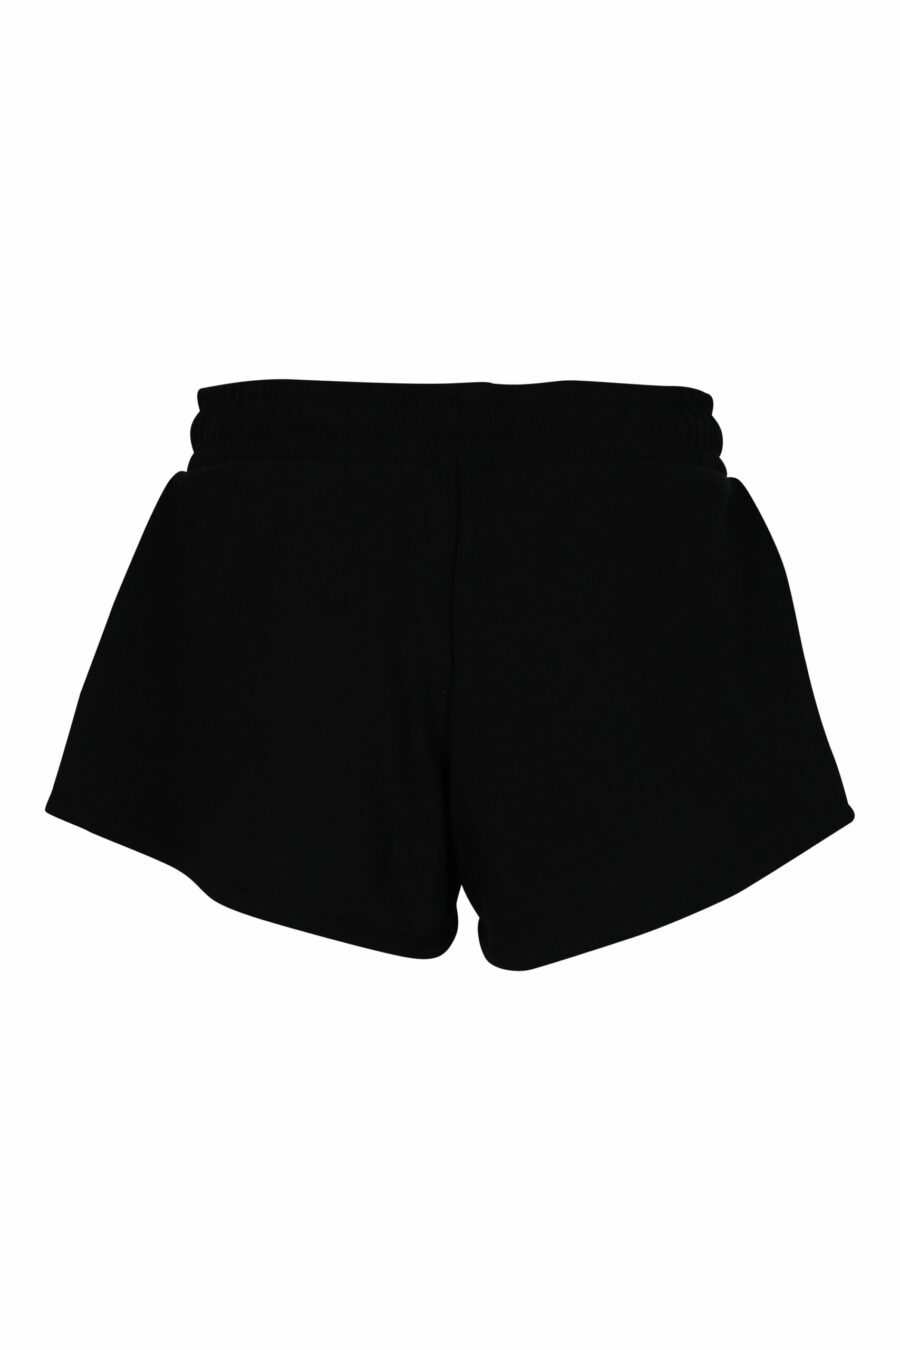 Schwarze Shorts mit mehrfarbigem Mini-Logo - 667113355924 1 skaliert